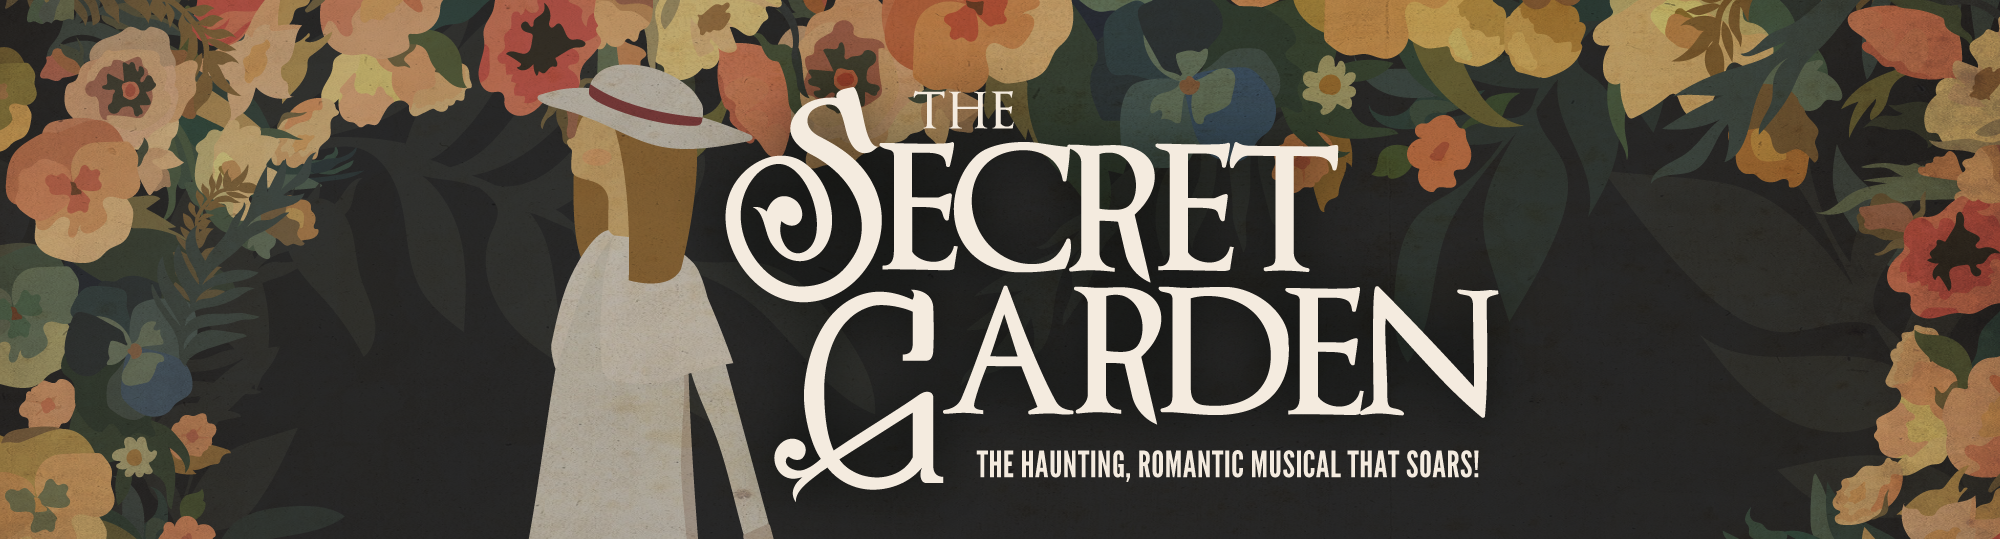 The Secret Garden banner